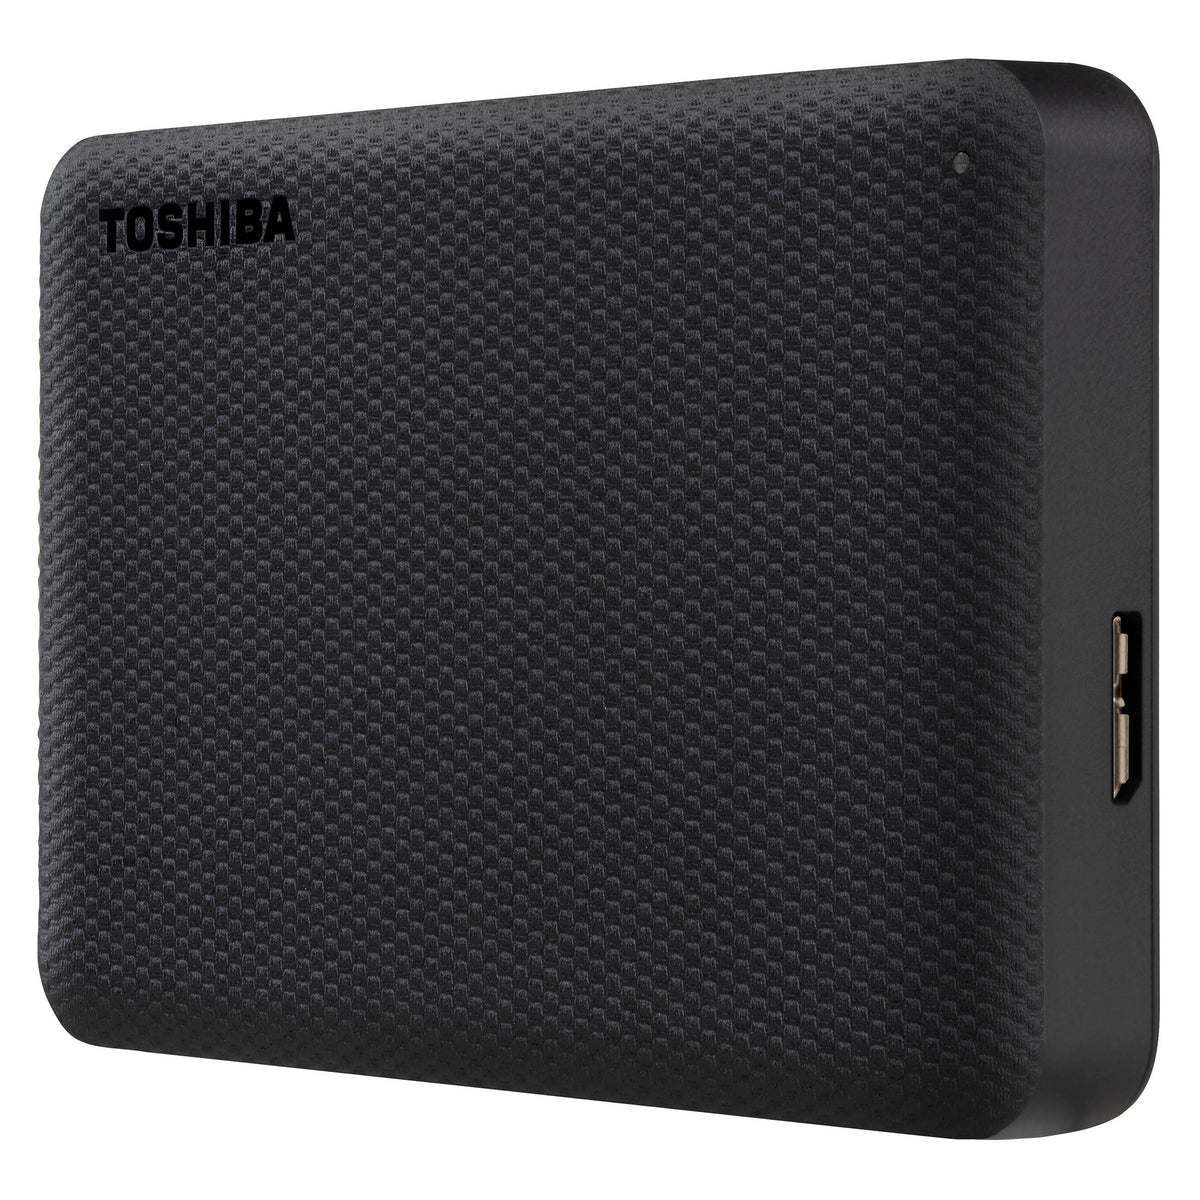 Disco Duro Toshiba Canvio Advance V10 | Externo | 1TB | Color Negro